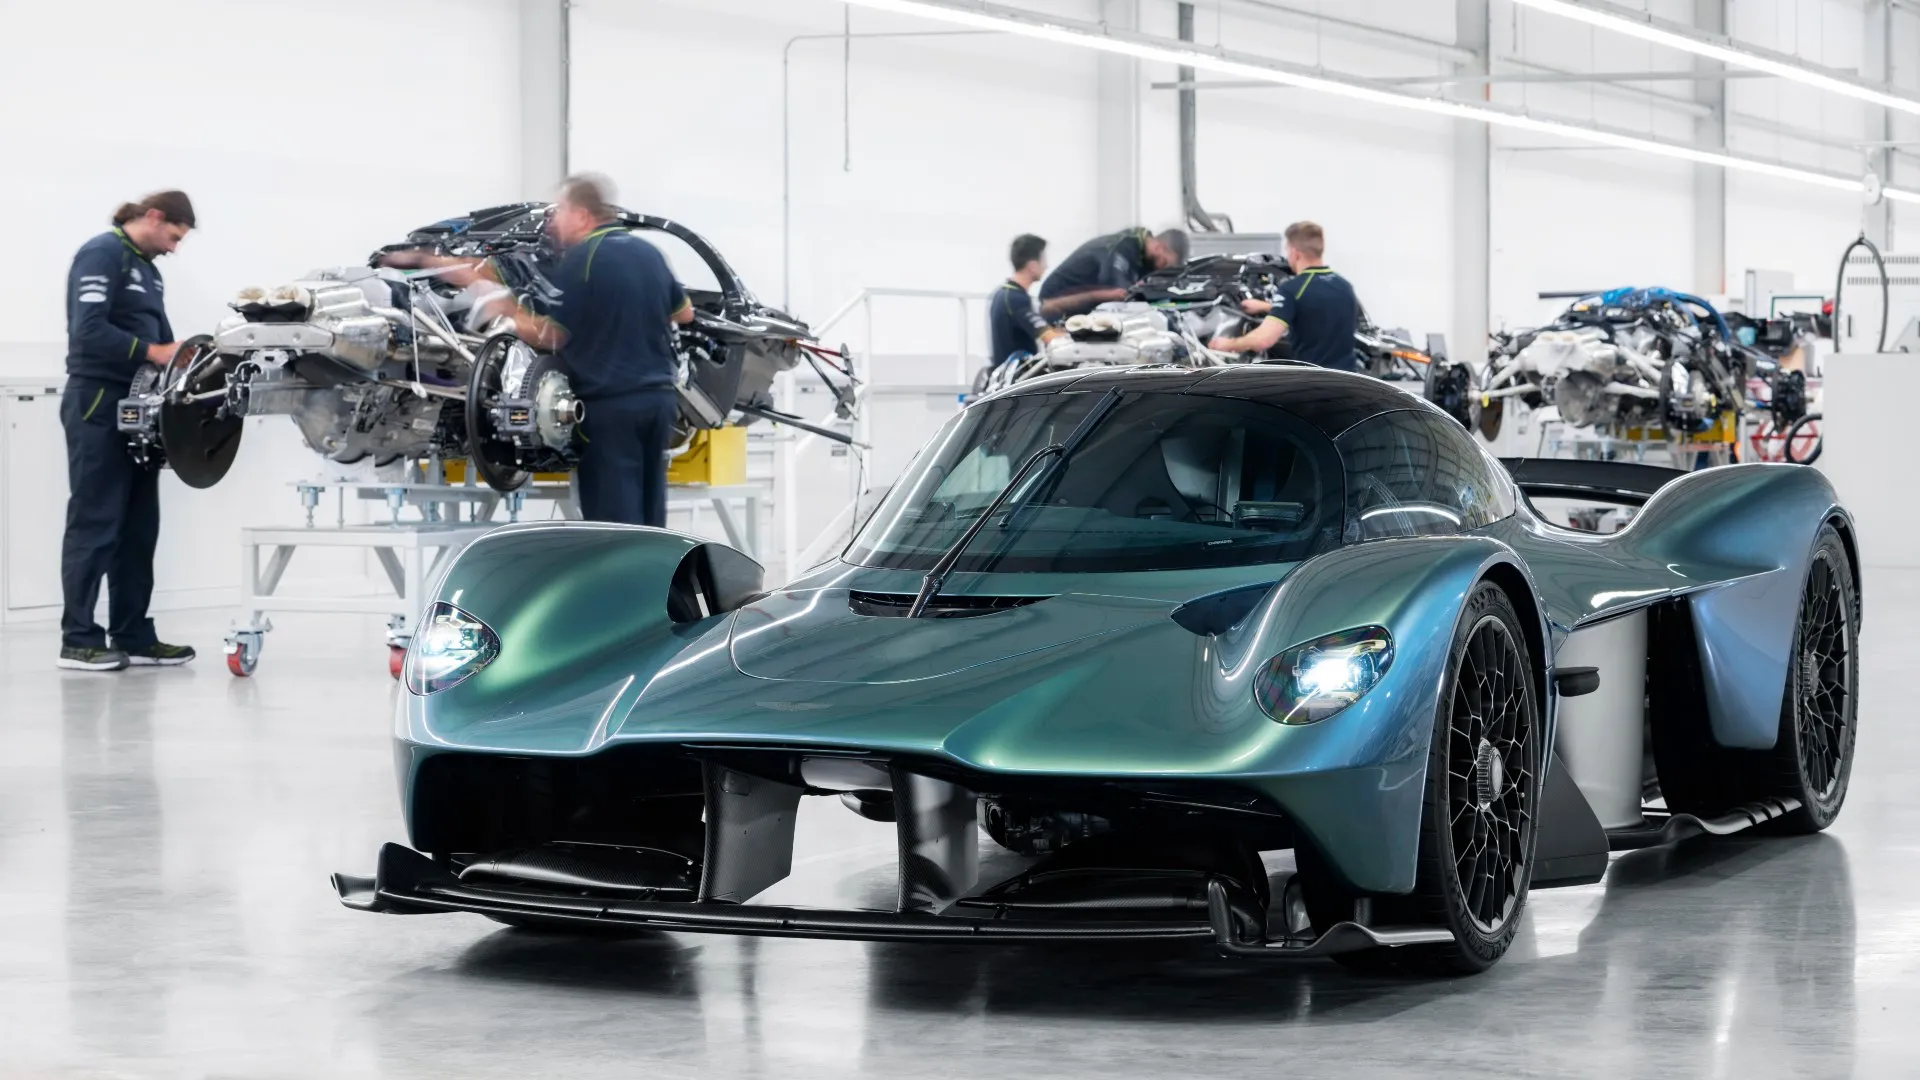 La transmisión del Aston Martin Valkyrie necesita una reconstrucción cada 50.000 kilómetros